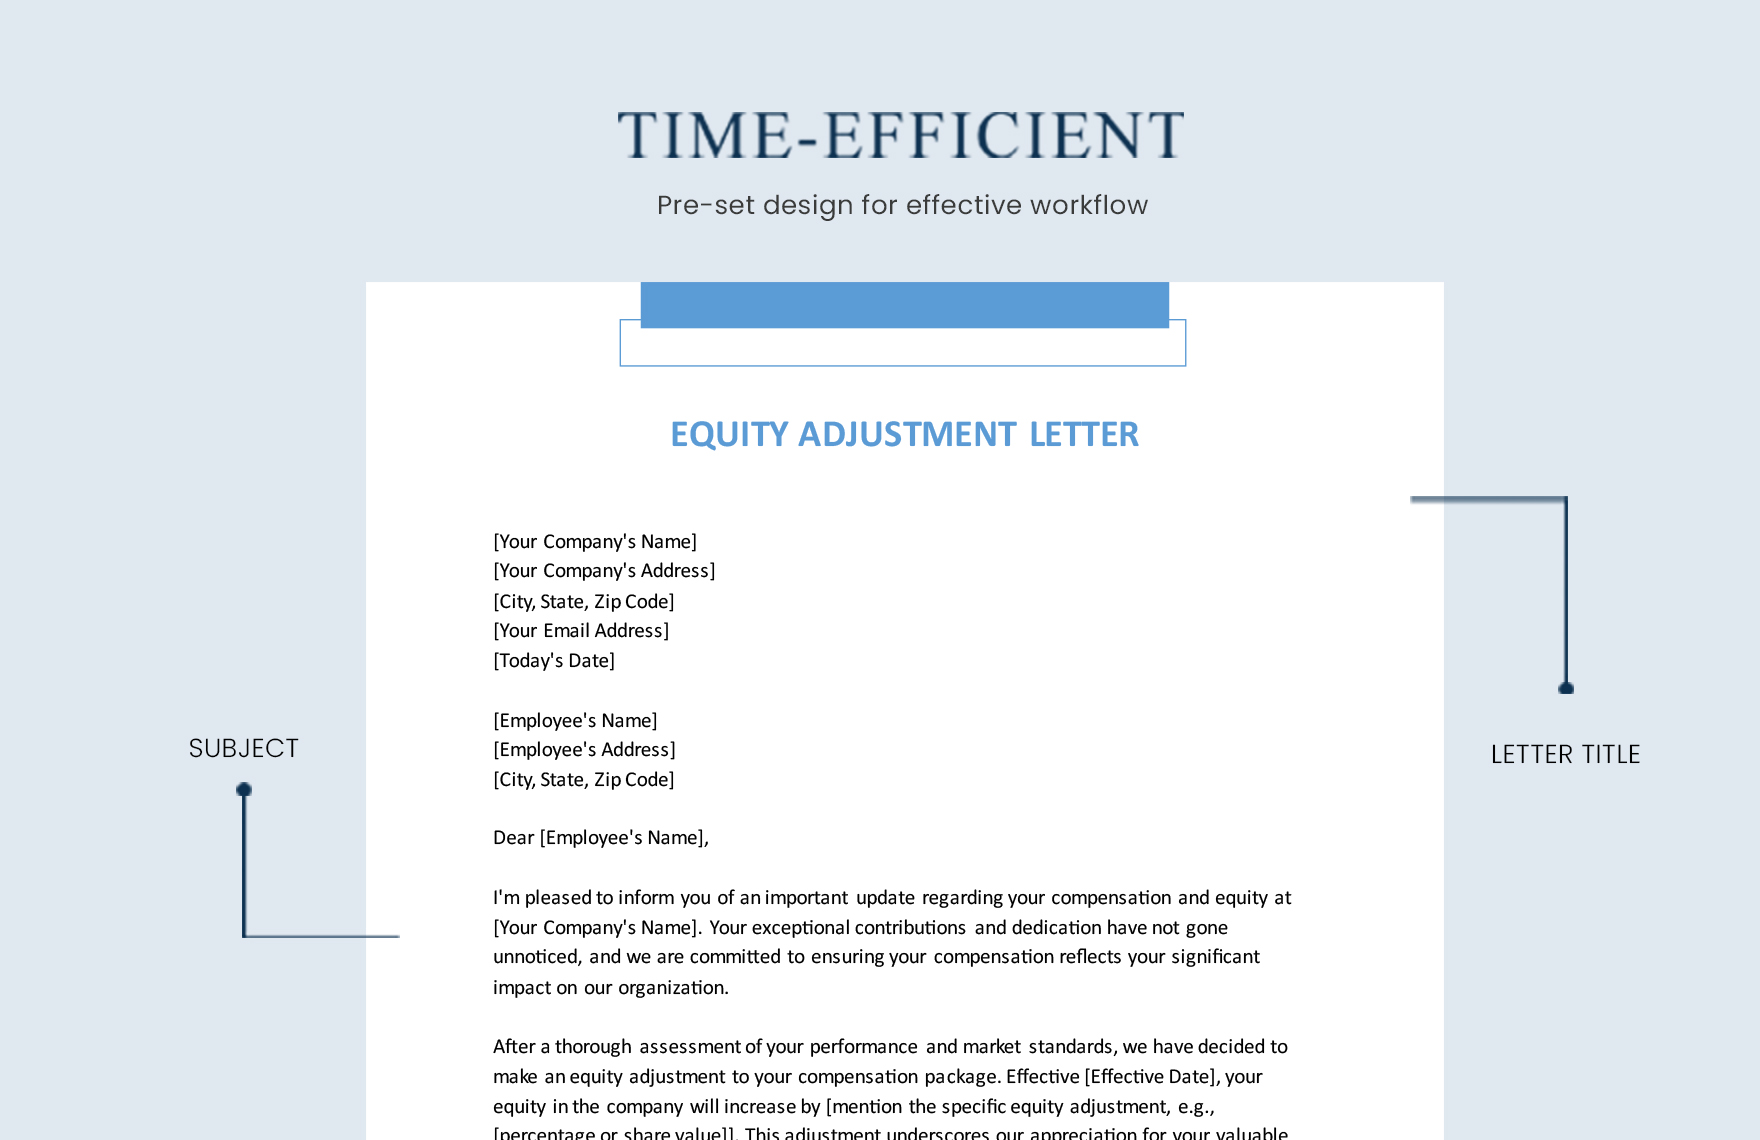 Equity Adjustment Letter